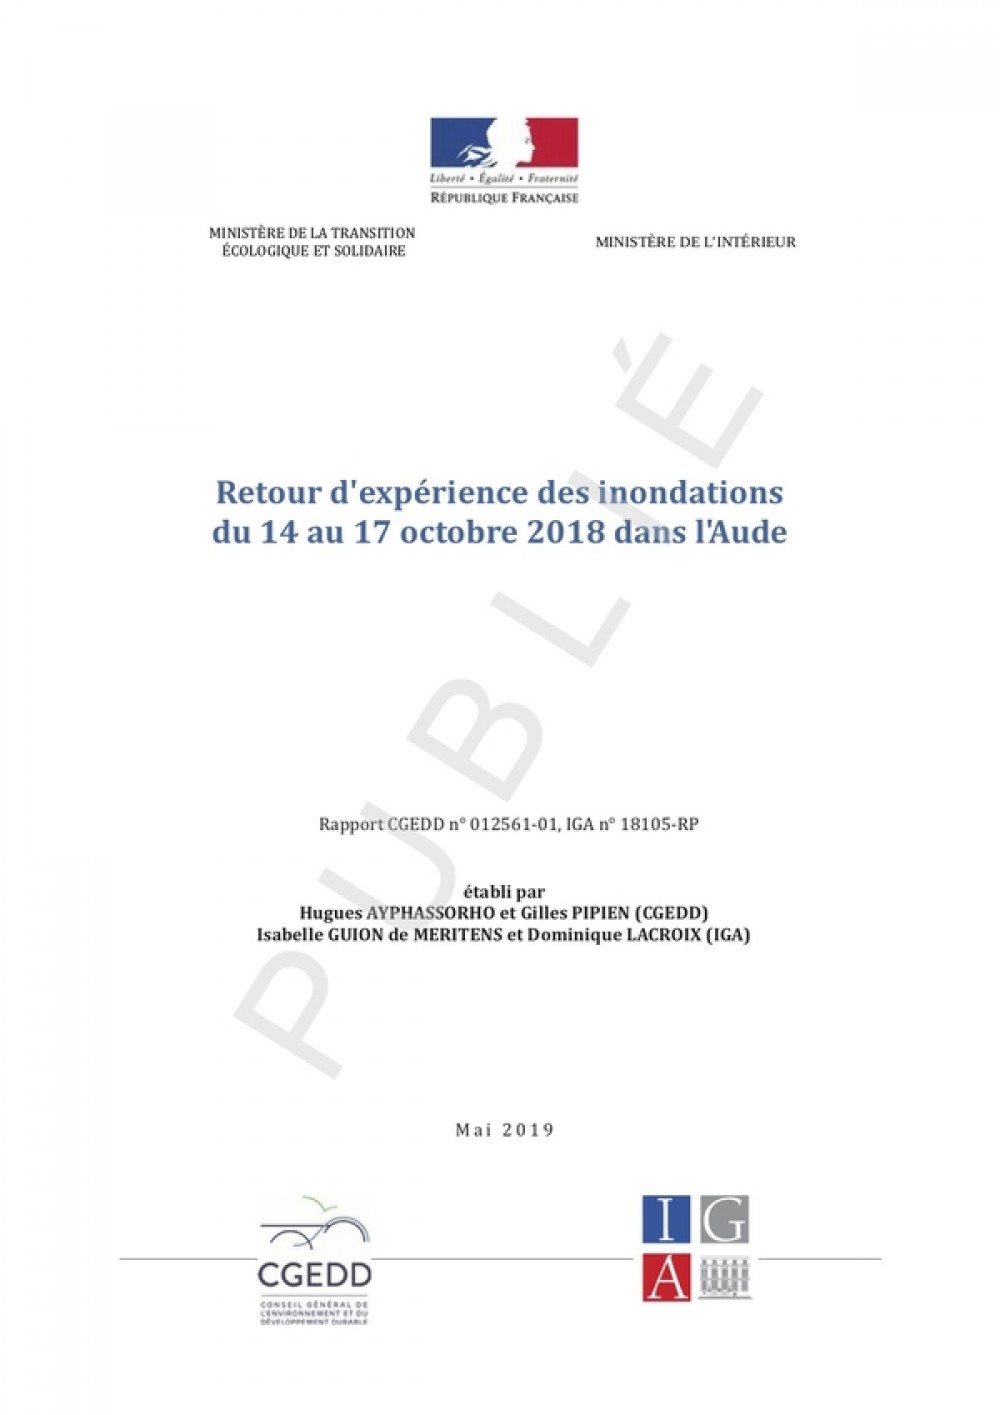 [Publication] Retour d'expérience des inondations du 14 au 17 octobre 2018 dans l'Aude - CGEDD